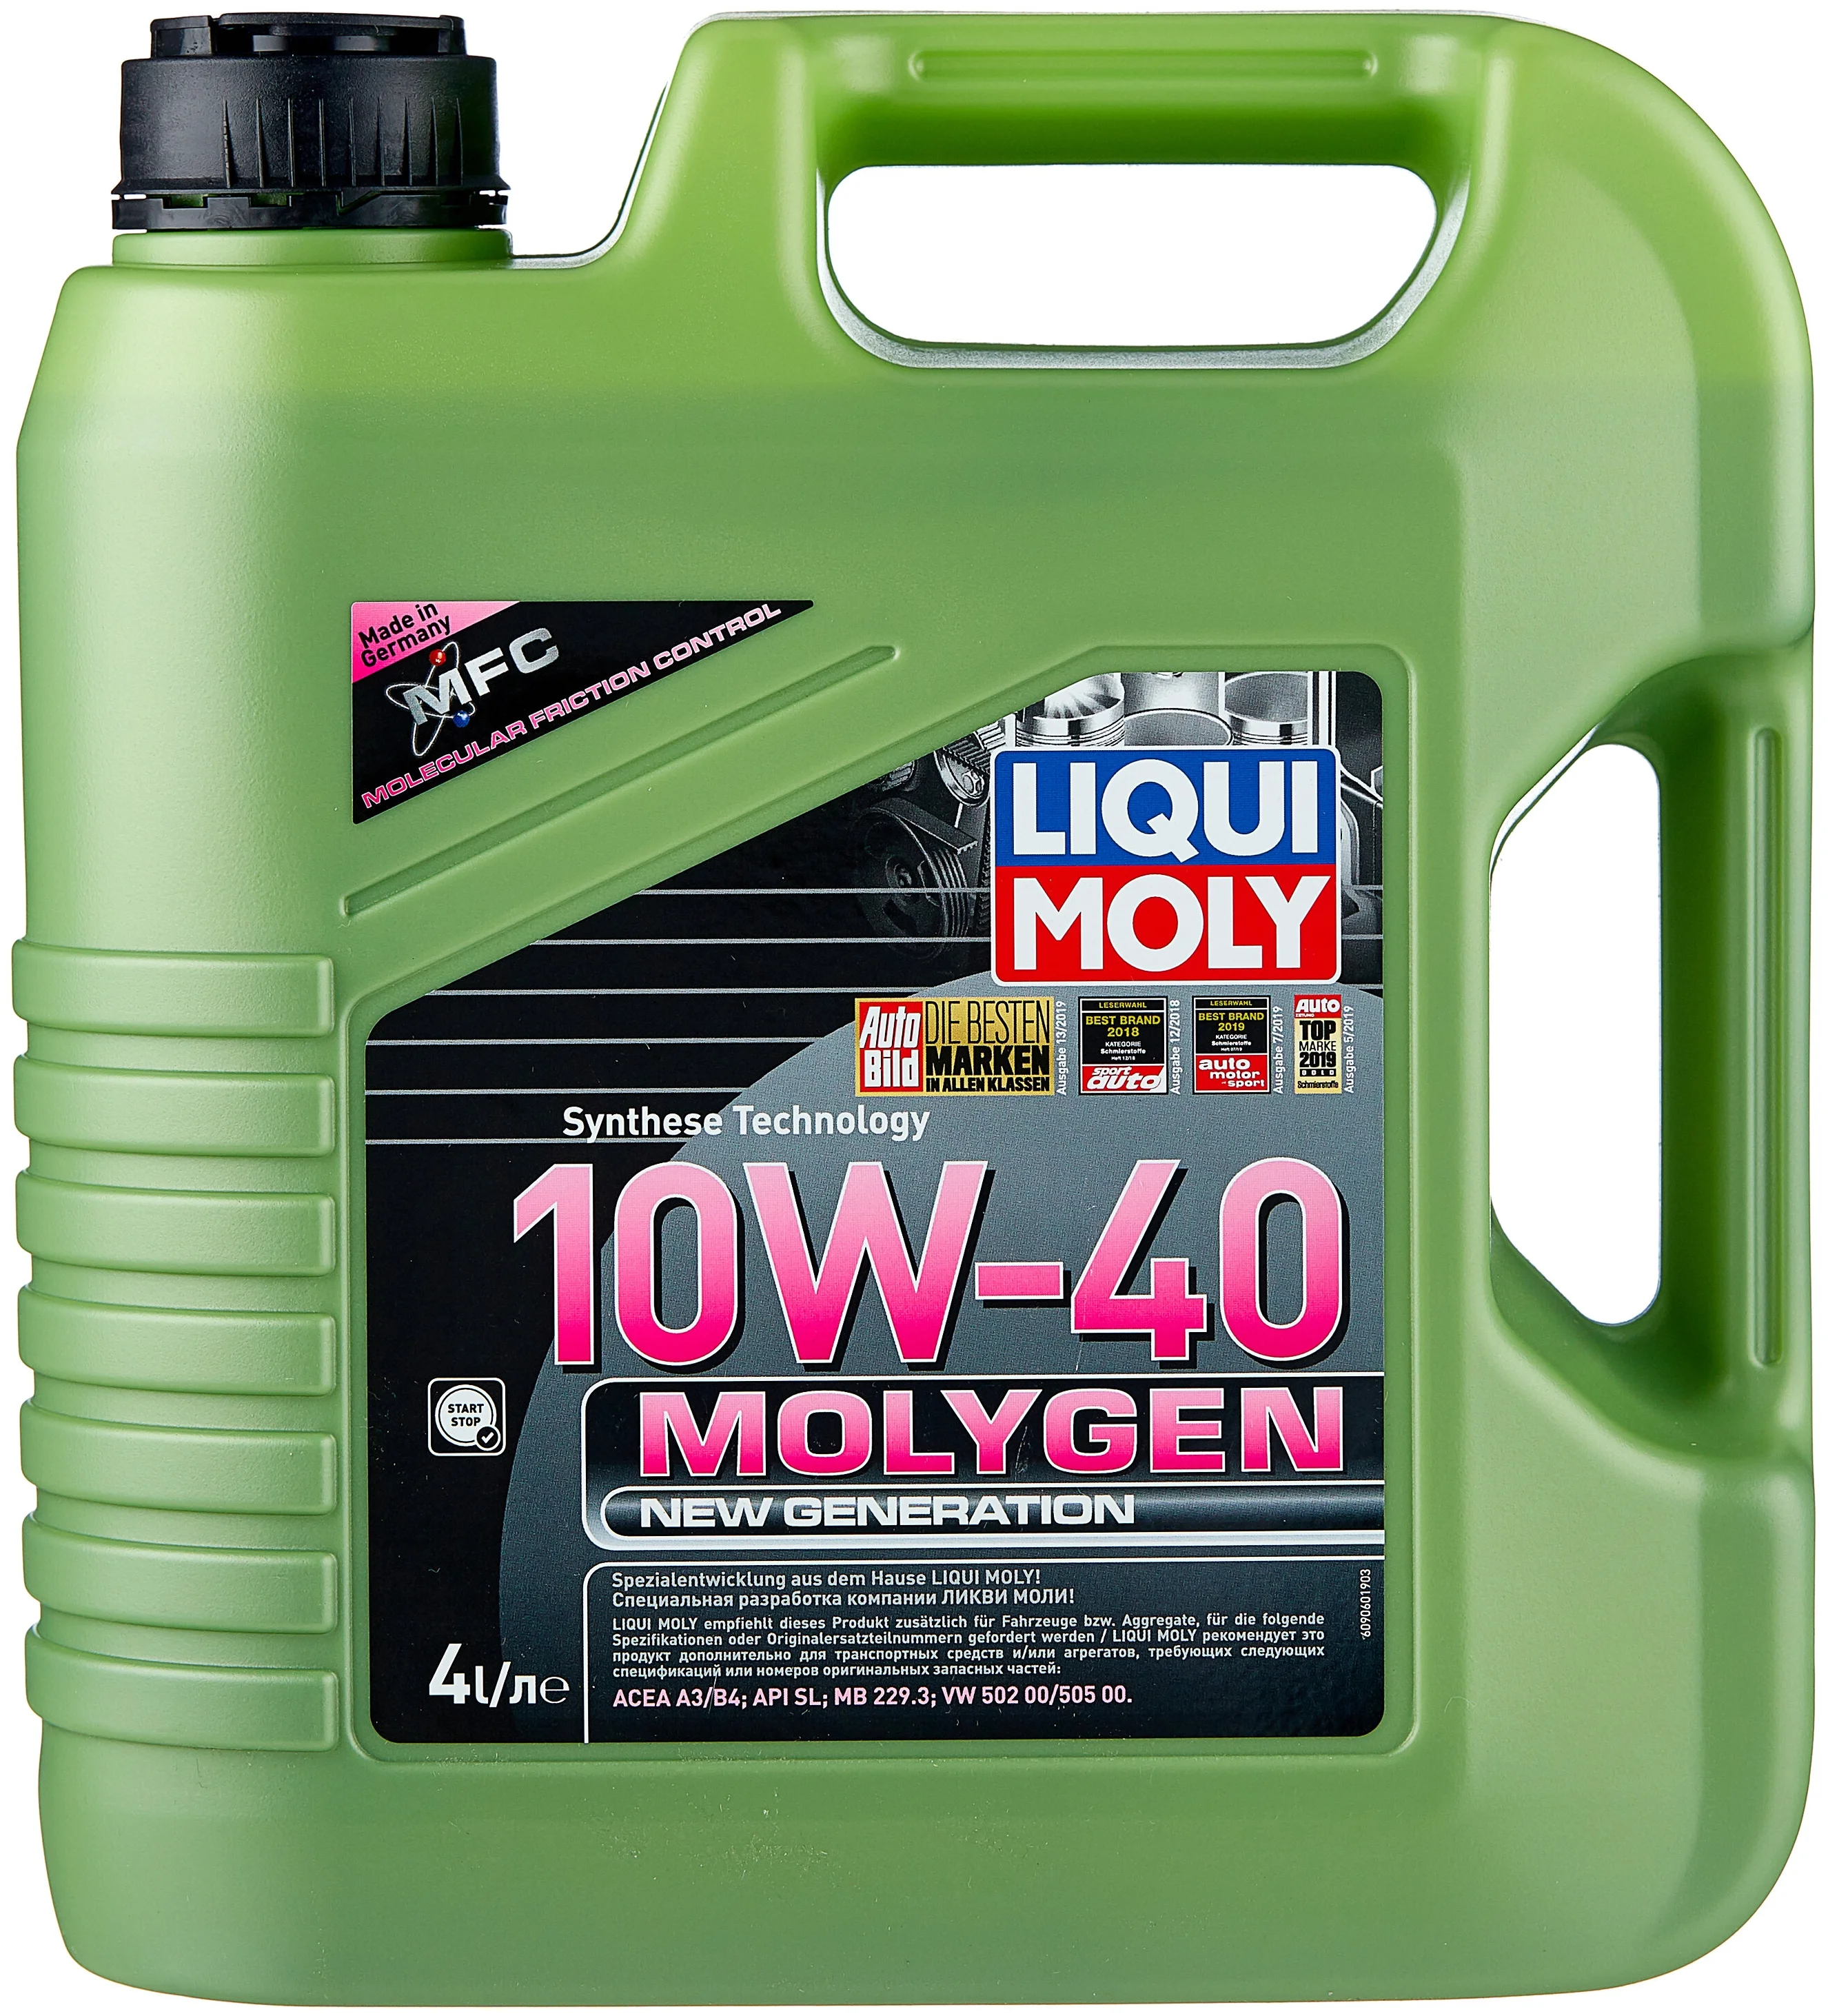 LIQUI MOLY Molygen New Generation 10W-40 - класс API SL